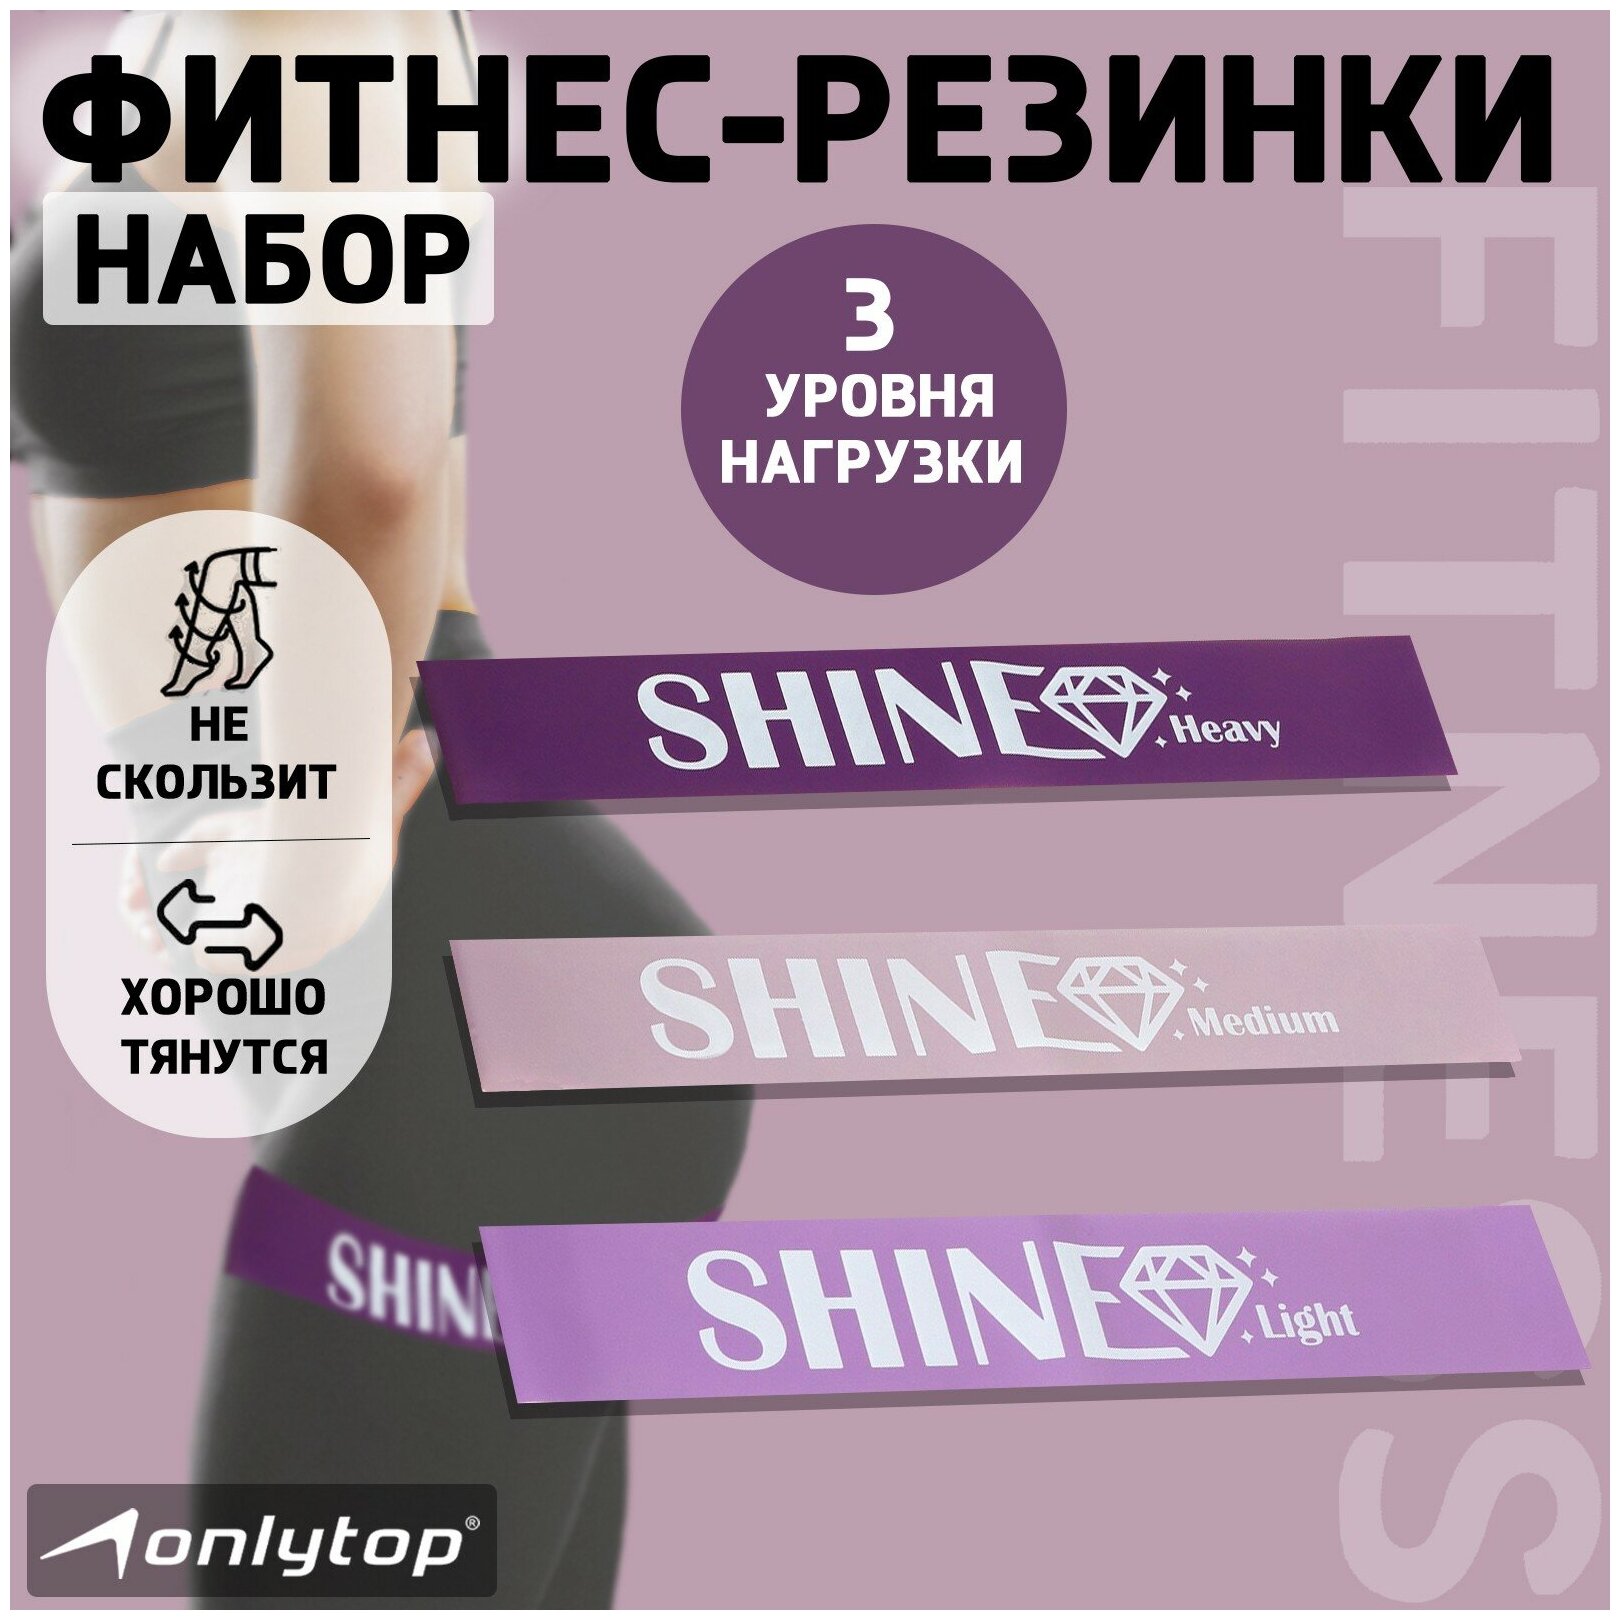 Набор фитнес-резинок ONLYTOP "Shine", размер 30 х 5 см, нагрузка 10,14,22 кг, набор 3 штуки, разноцветный